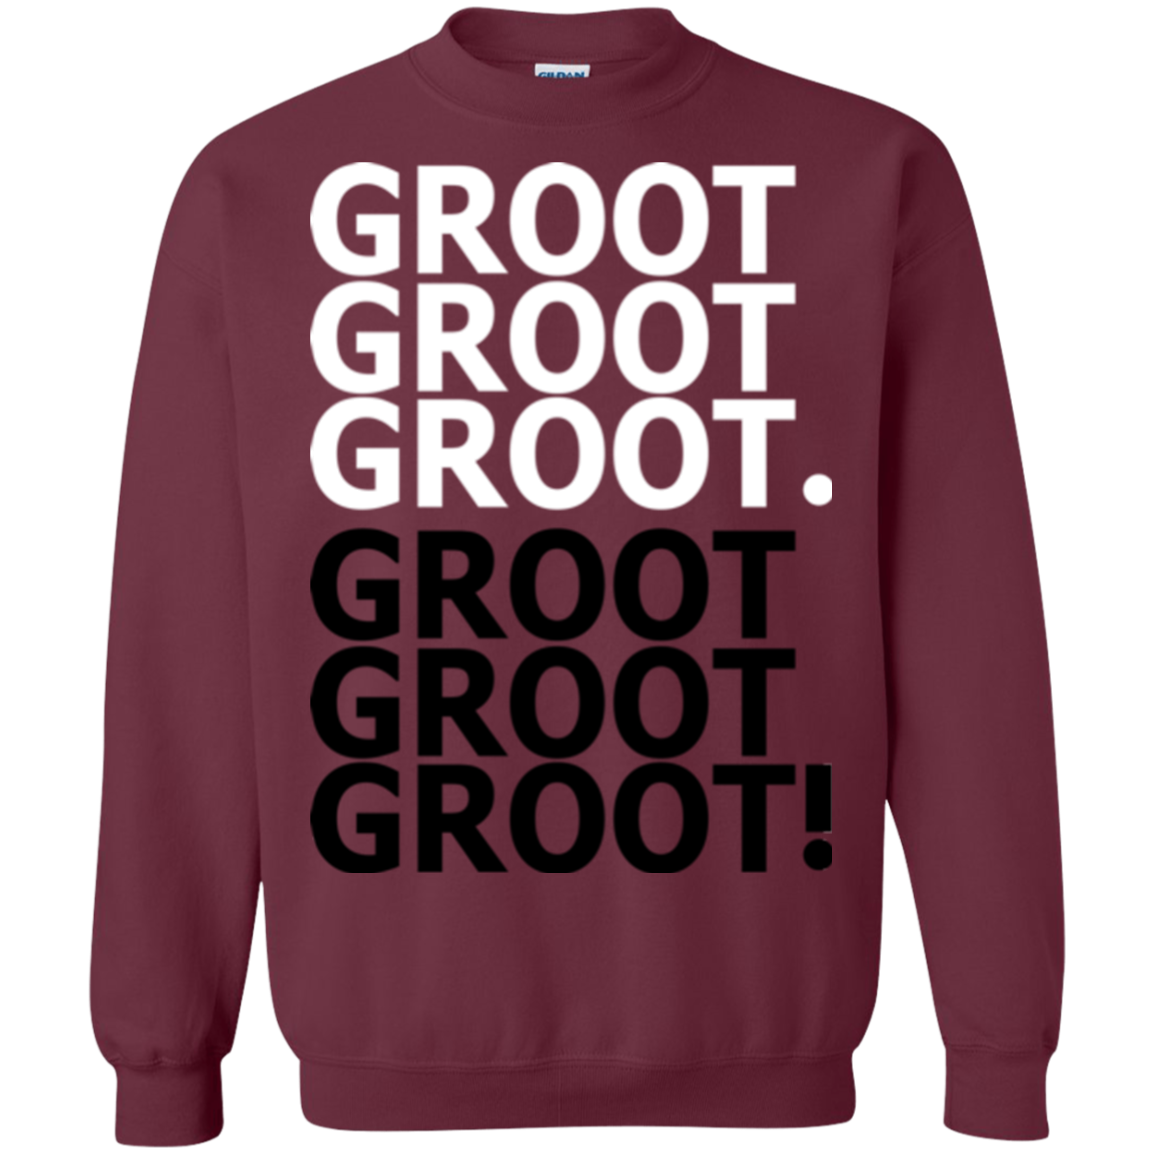 Get over it Groot Crewneck Sweatshirt